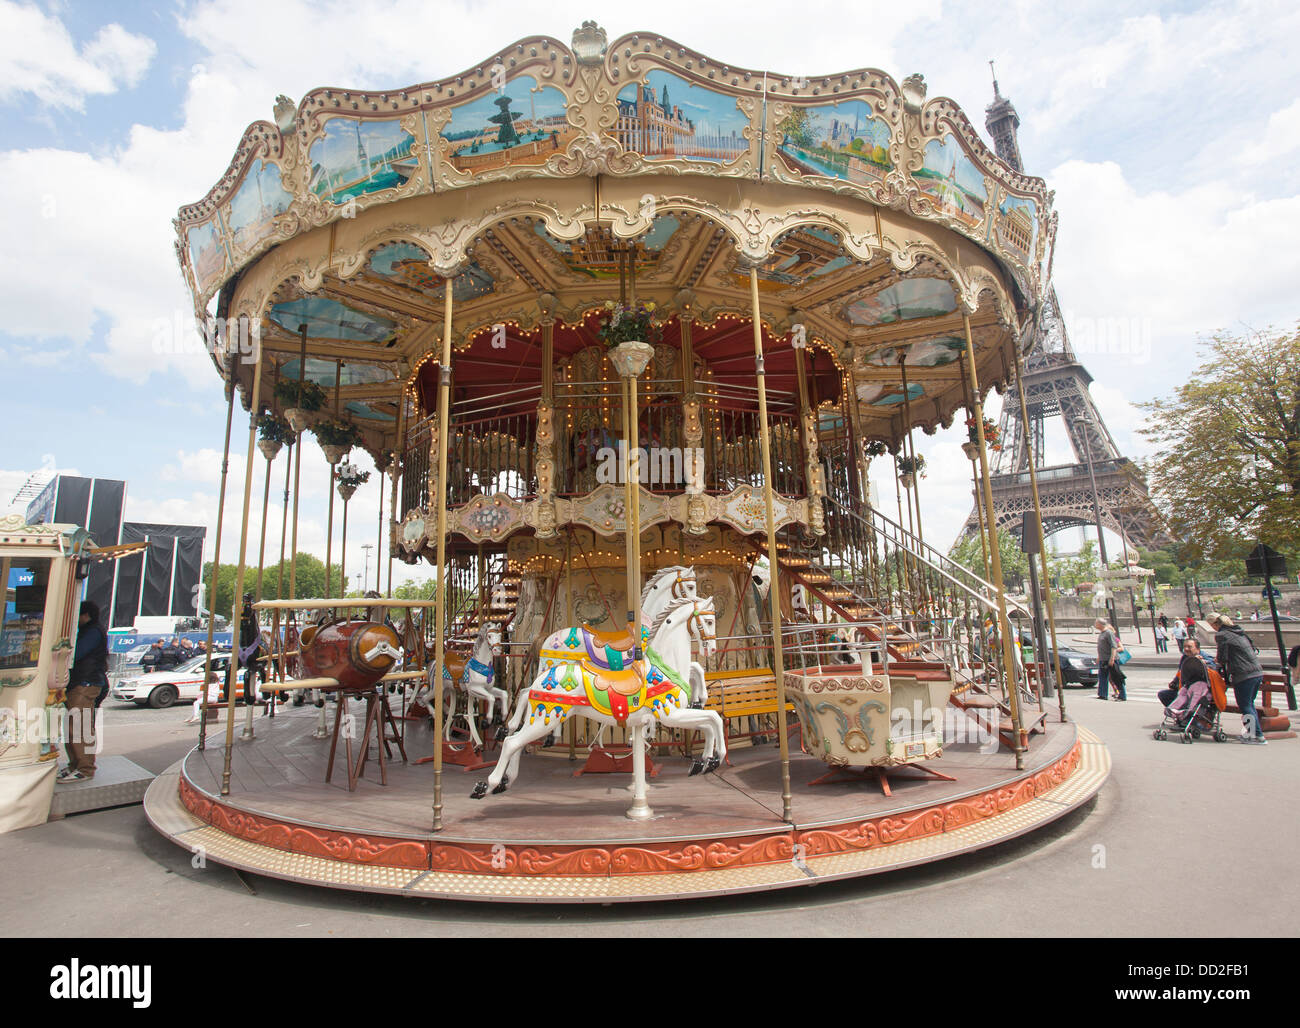 Carrousel à l'ancienne style français près de la Tour Eiffel à Paris, France, également appelé un manège. Banque D'Images